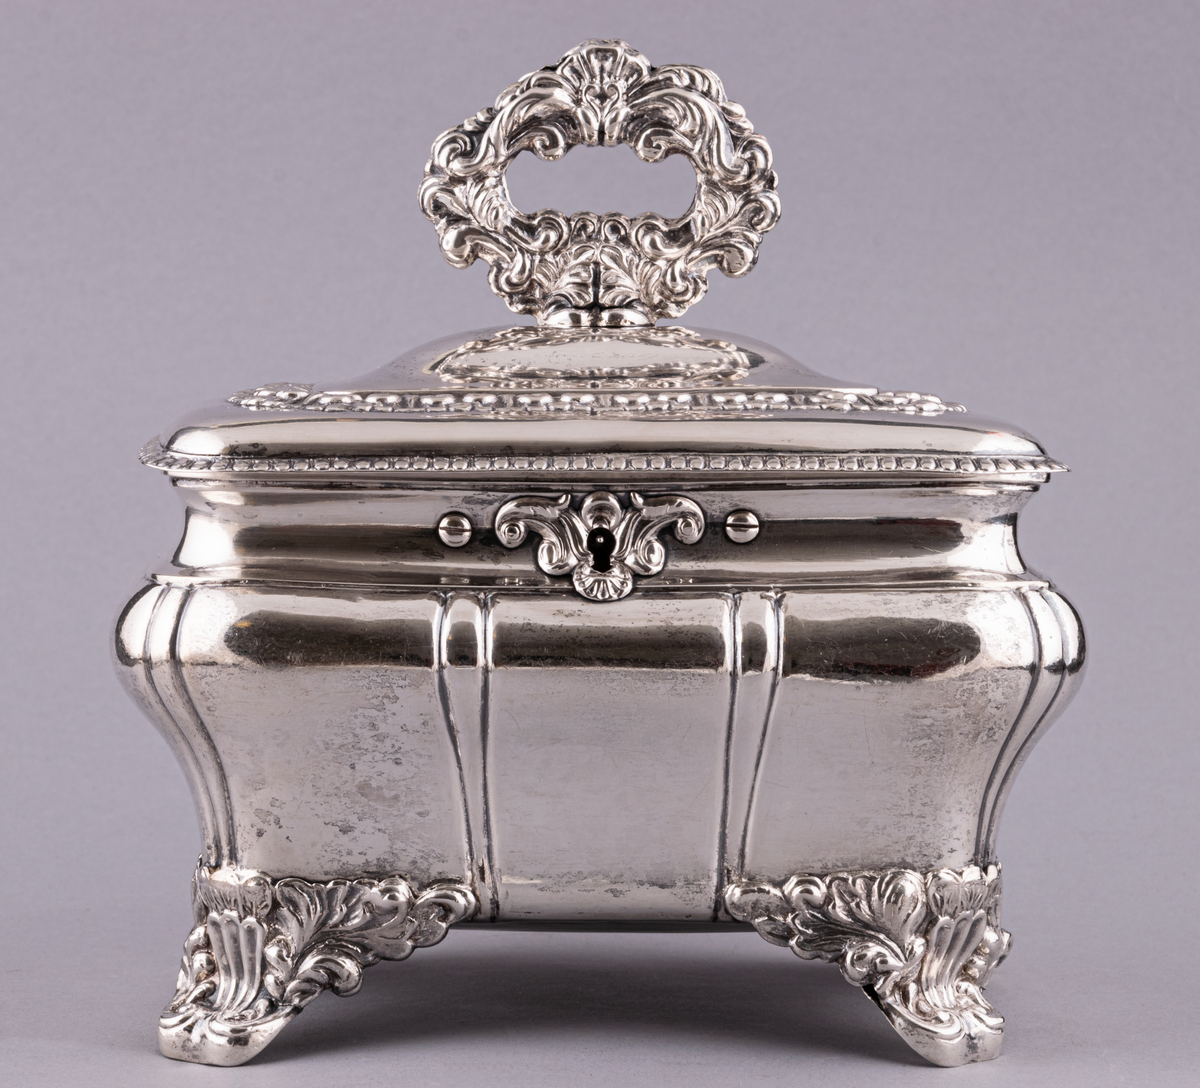 Sockerskrin av silver, fyrsidigt med lock på gångjärn, med nyckel. Uppstående ögleformigt handtag på lockets ovansida.
Stämplad:
E. G. Öström 
G.
V4